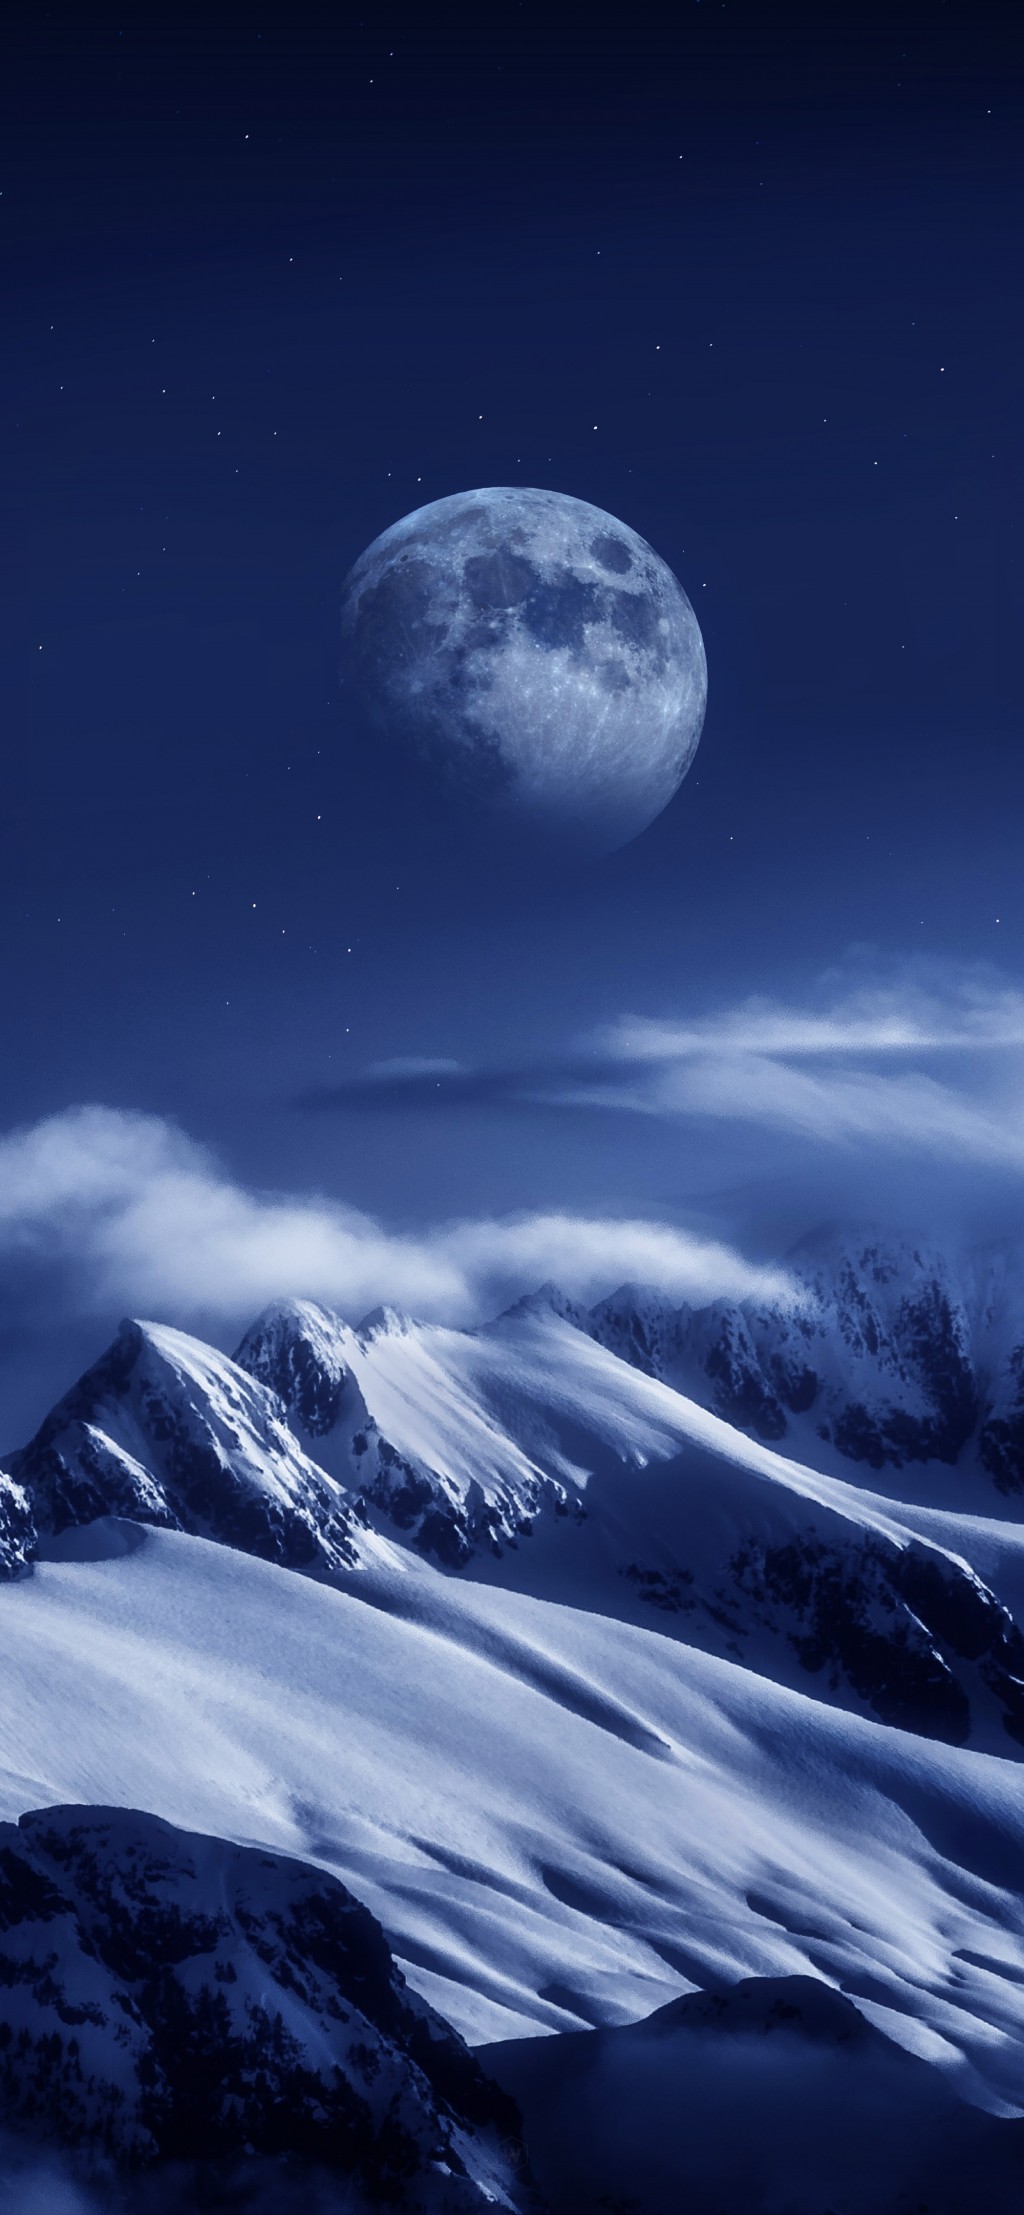 月球系列创意星空风景手机壁纸